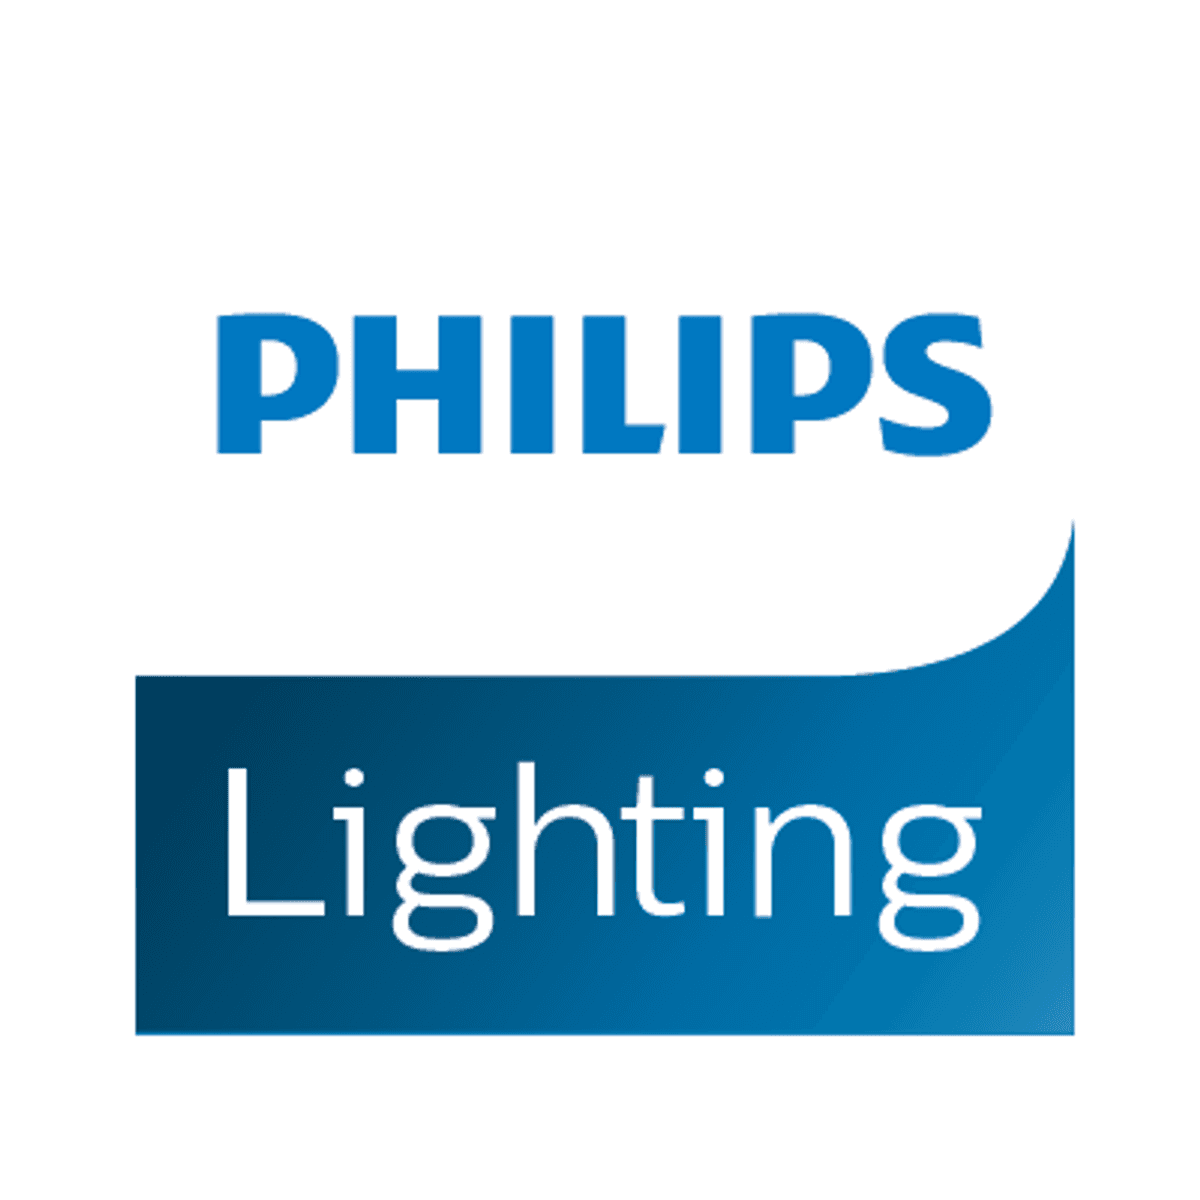 Philips Lighting verandert bedrijfsnaam in Signify en lanceert IoT platform image